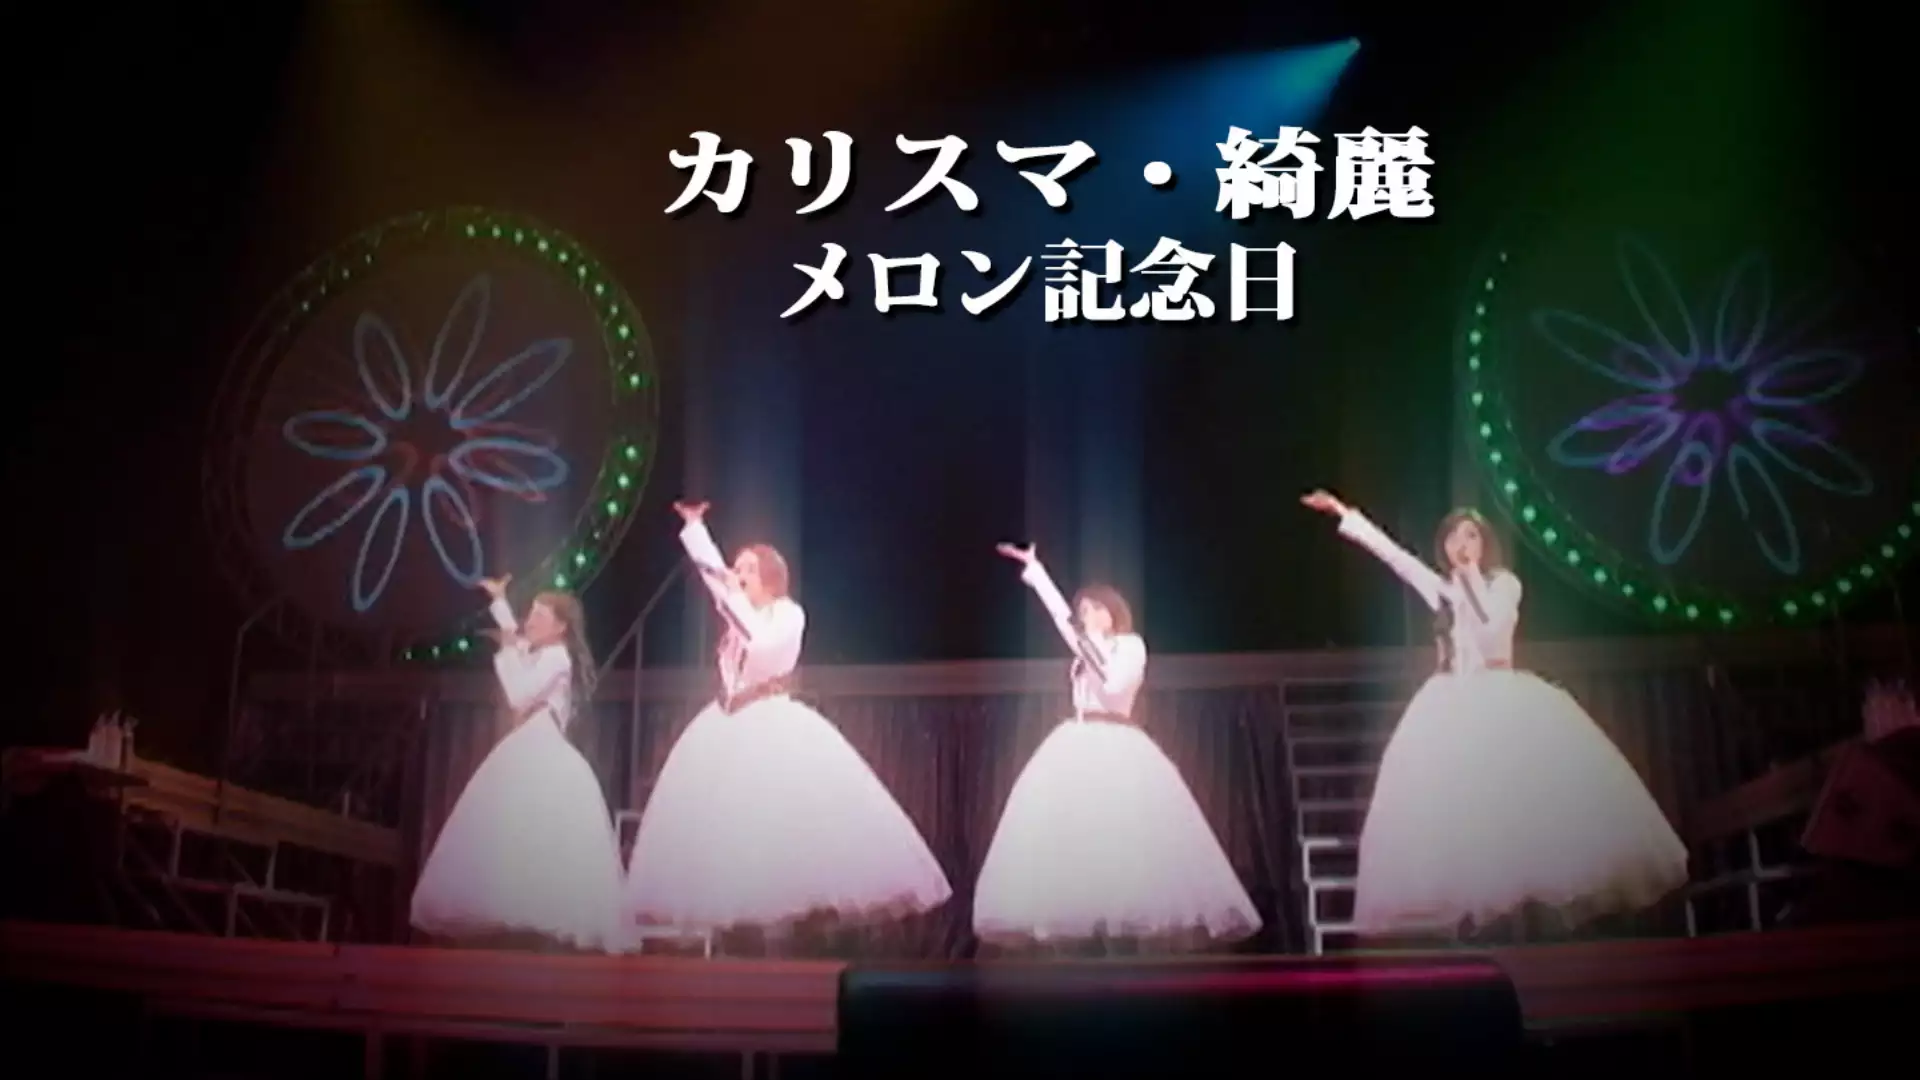 カリスマ・綺麗（PV LIVE Ver.）